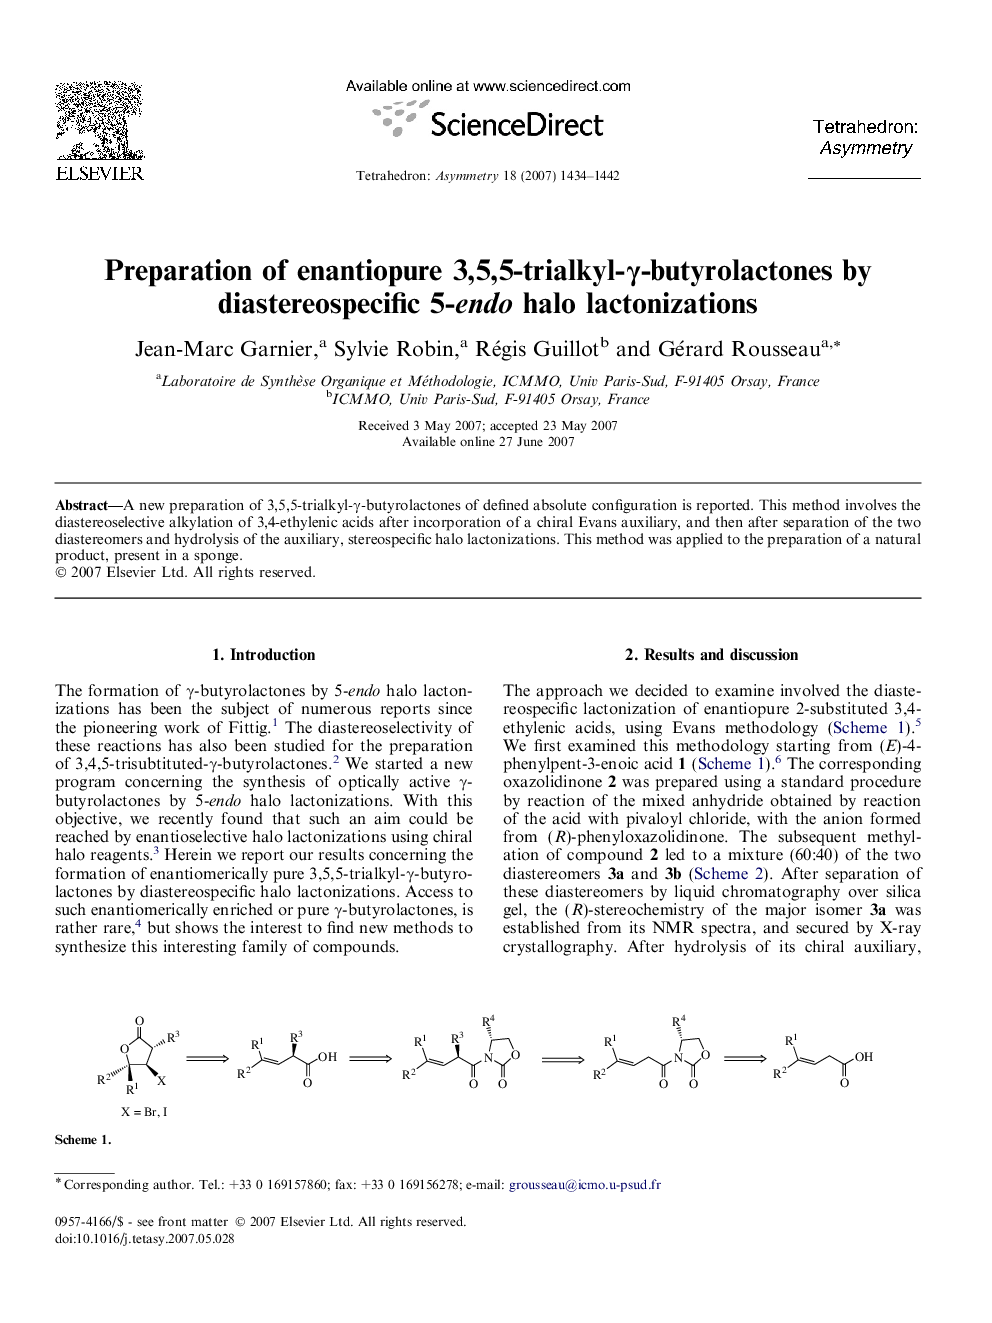 Preparation of enantiopure 3,5,5-trialkyl-γ-butyrolactones by diastereospecific 5-endo halo lactonizations